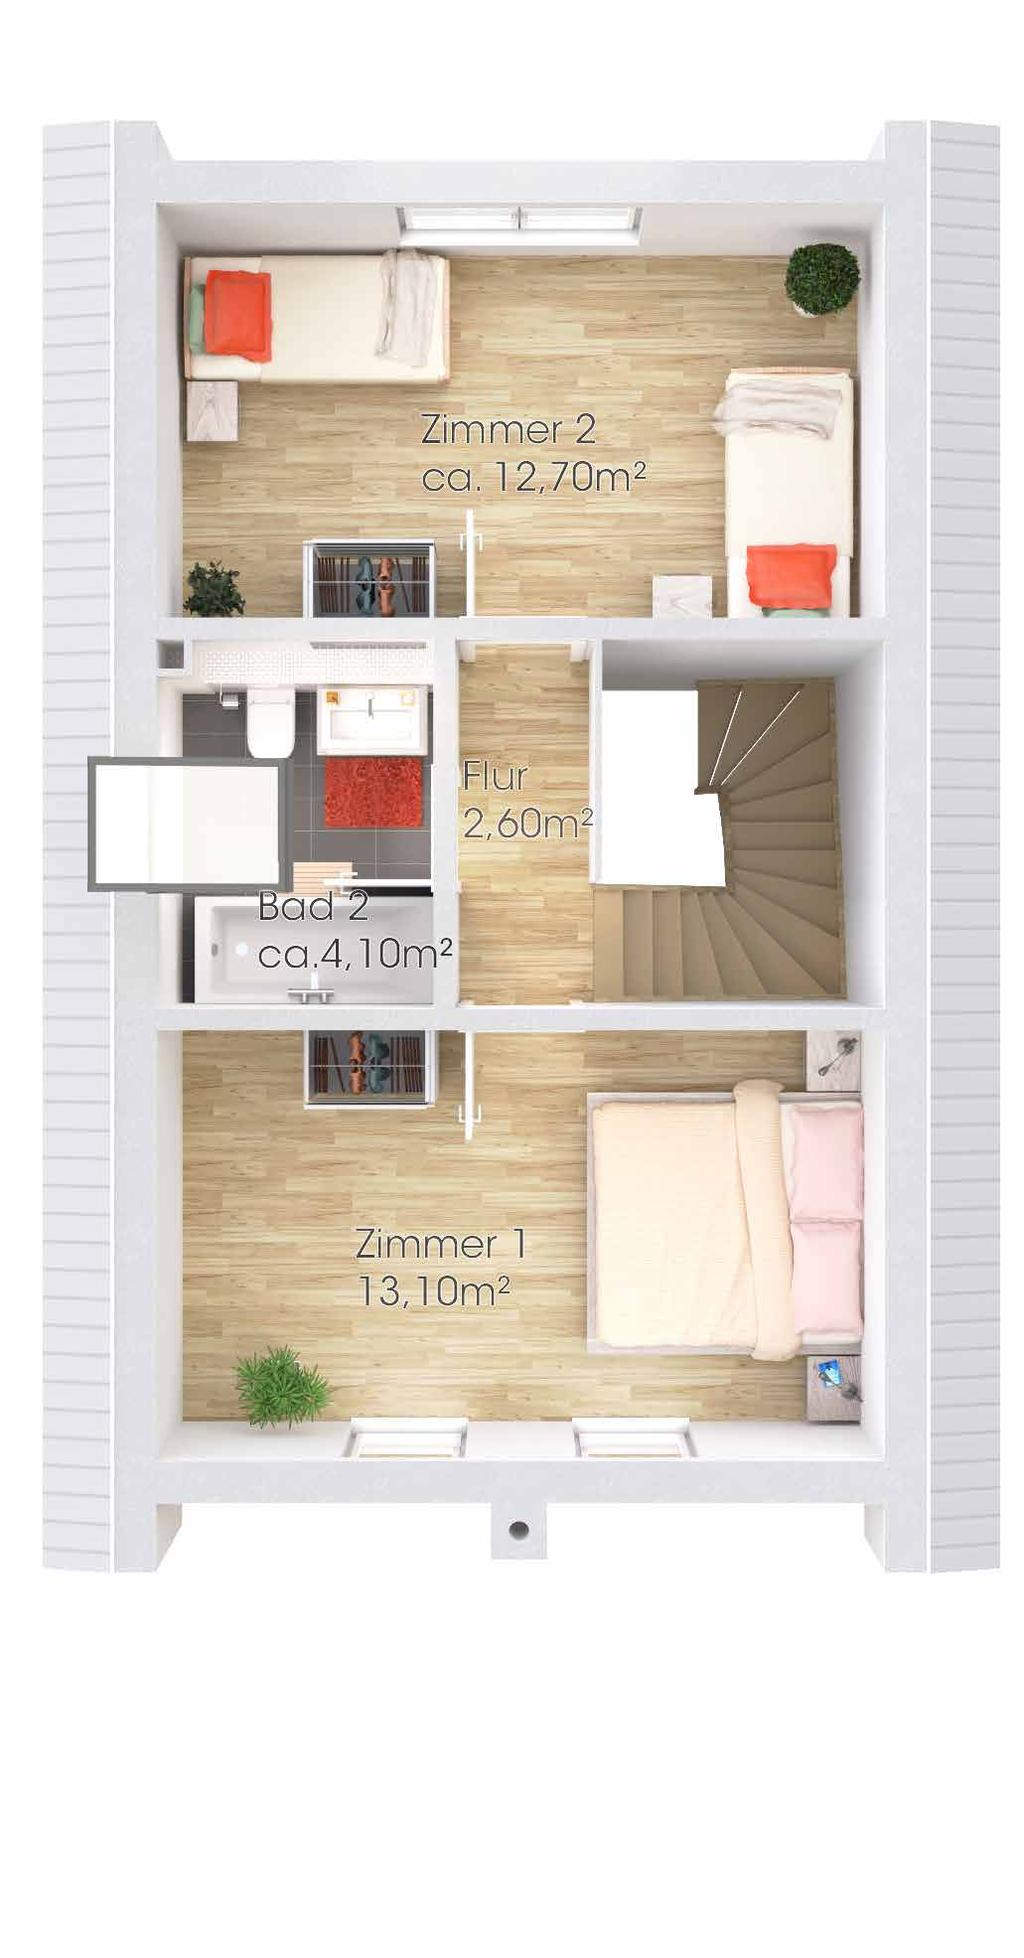 Das Ferienhaus Freya verfügt zur Optimierung der Wohnqualität über eine moderne Fußbodenheizung in allen Räumen (außer dem optional wählbaren